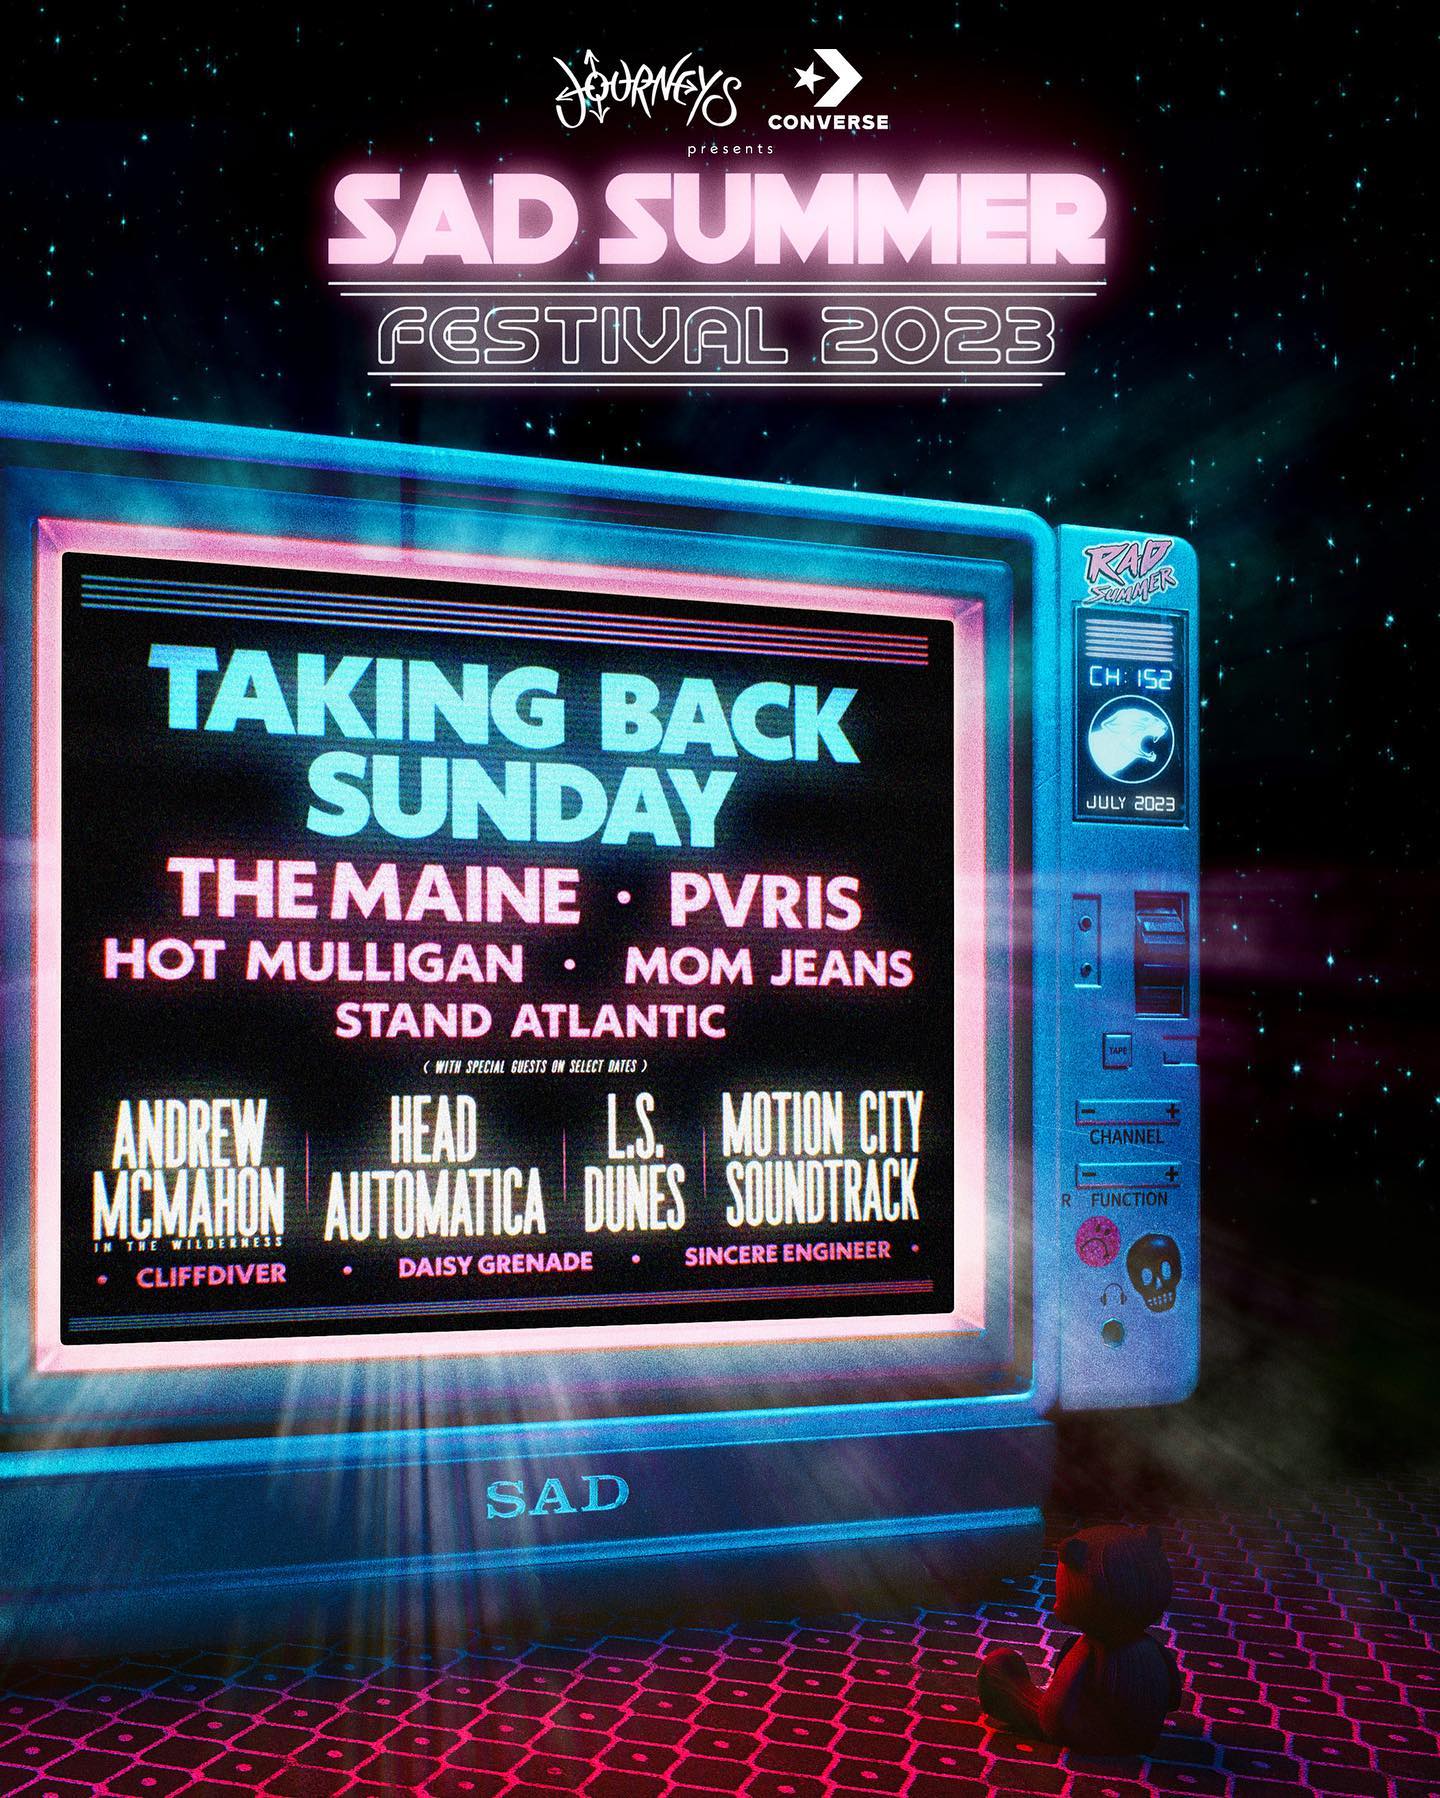 Sad Summer Festival Taking Back Sunday, The Maine, Pvris, Hot Mulligan